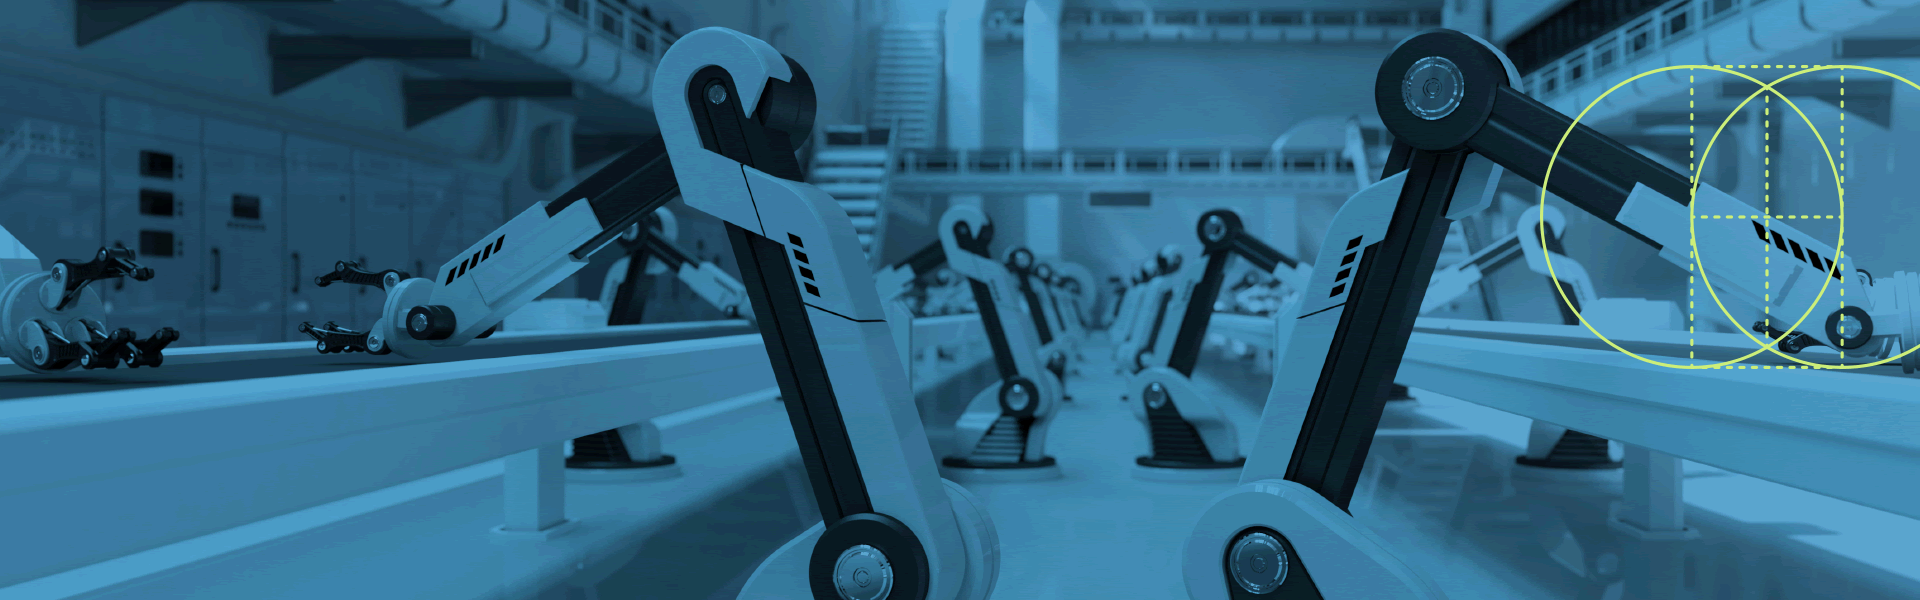 工廠中的機器人